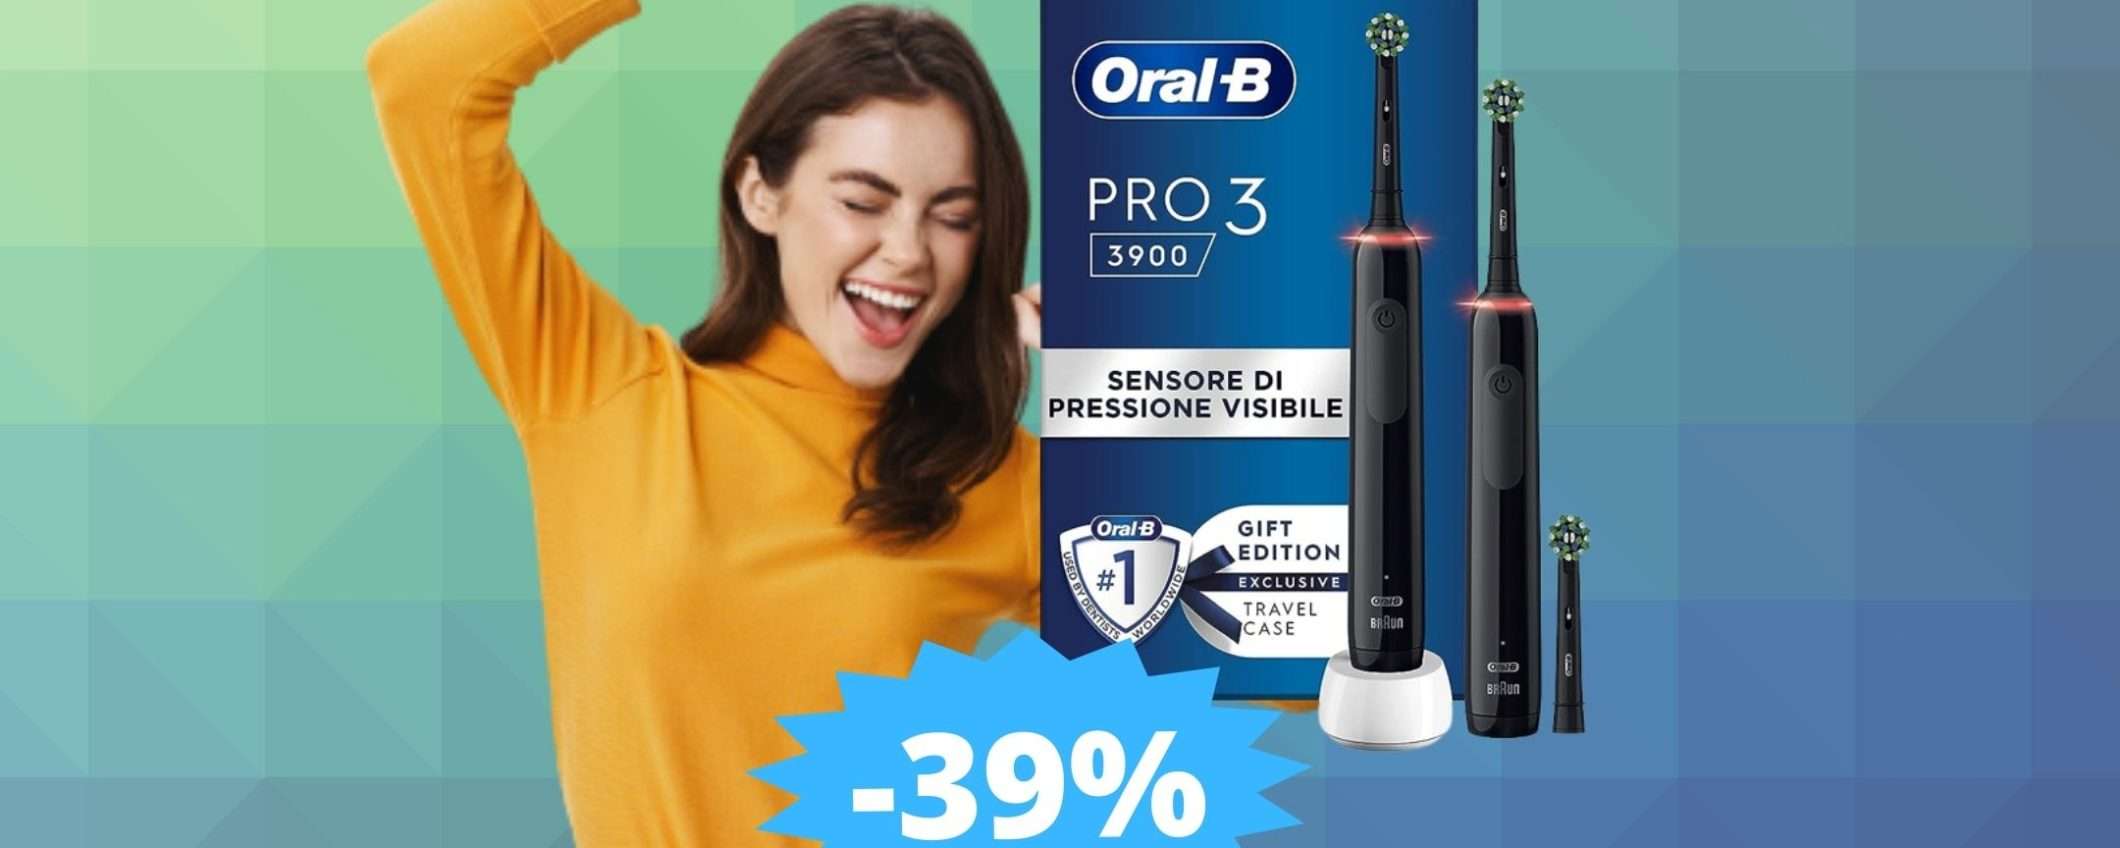 Oral-B Pro 3: MEGA sconto per lo spazzolino elettrico definitivo